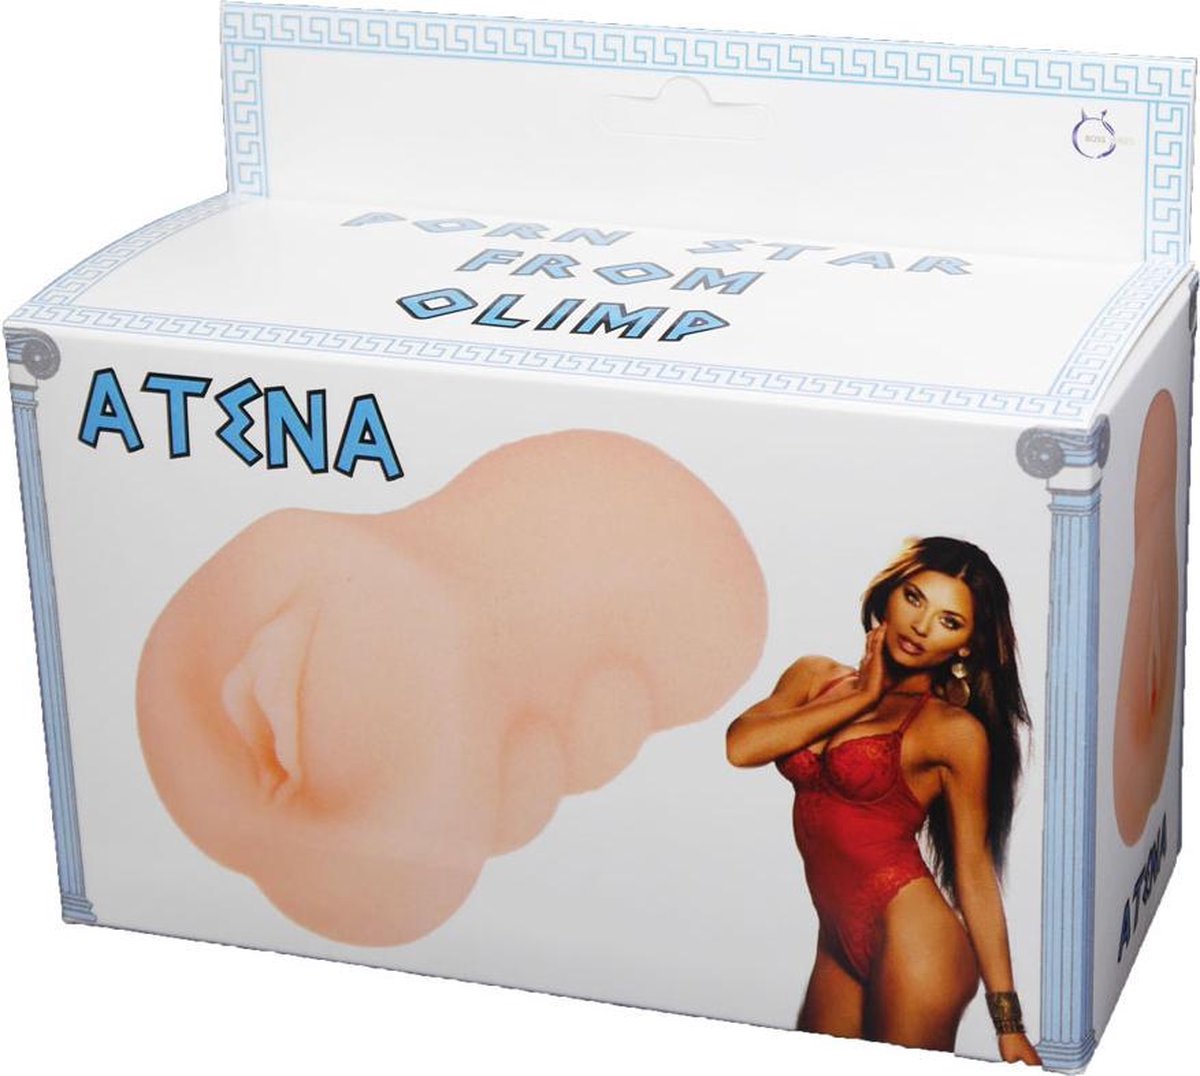 Bossoftoys - Atena - Masturbator - Vagina - zware poes - 650 gram - voor het echte gevoel - 26-00006